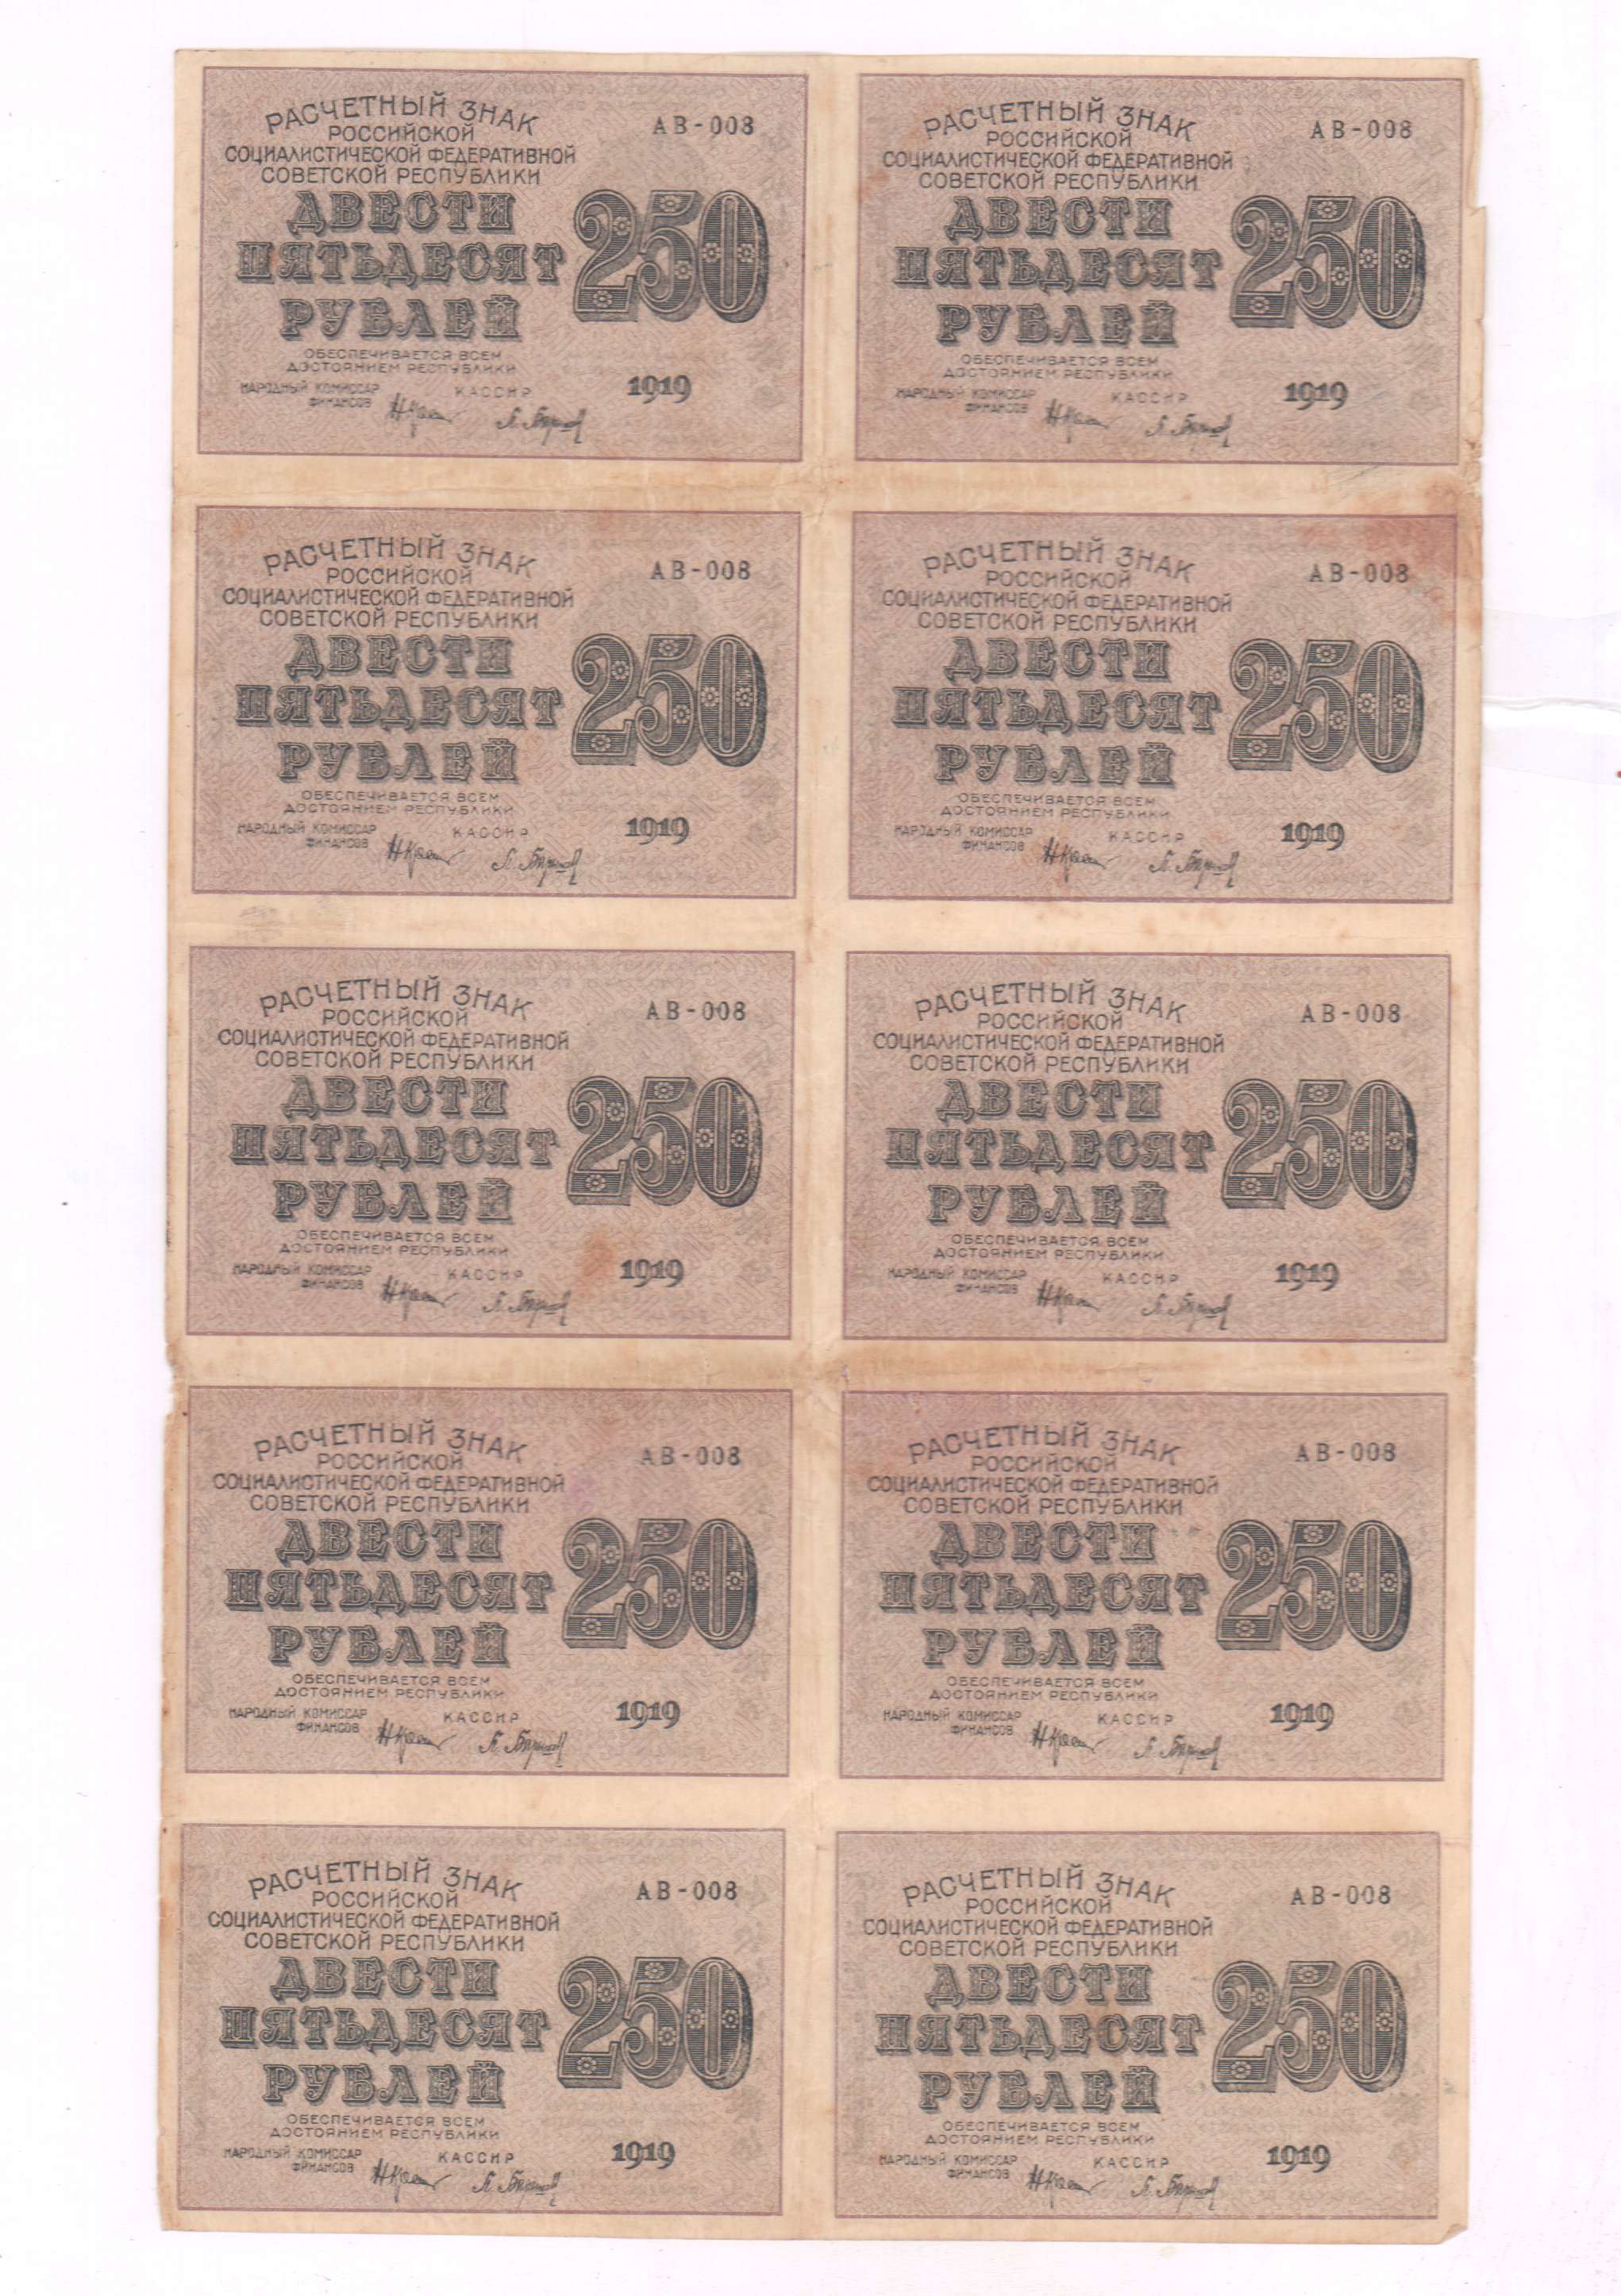 250 лист в рублях. 250 Рублей 1919 лист. Неразрезанный лист рублей банкнот. Сколько стоит расчëтный знак 250 рублей.